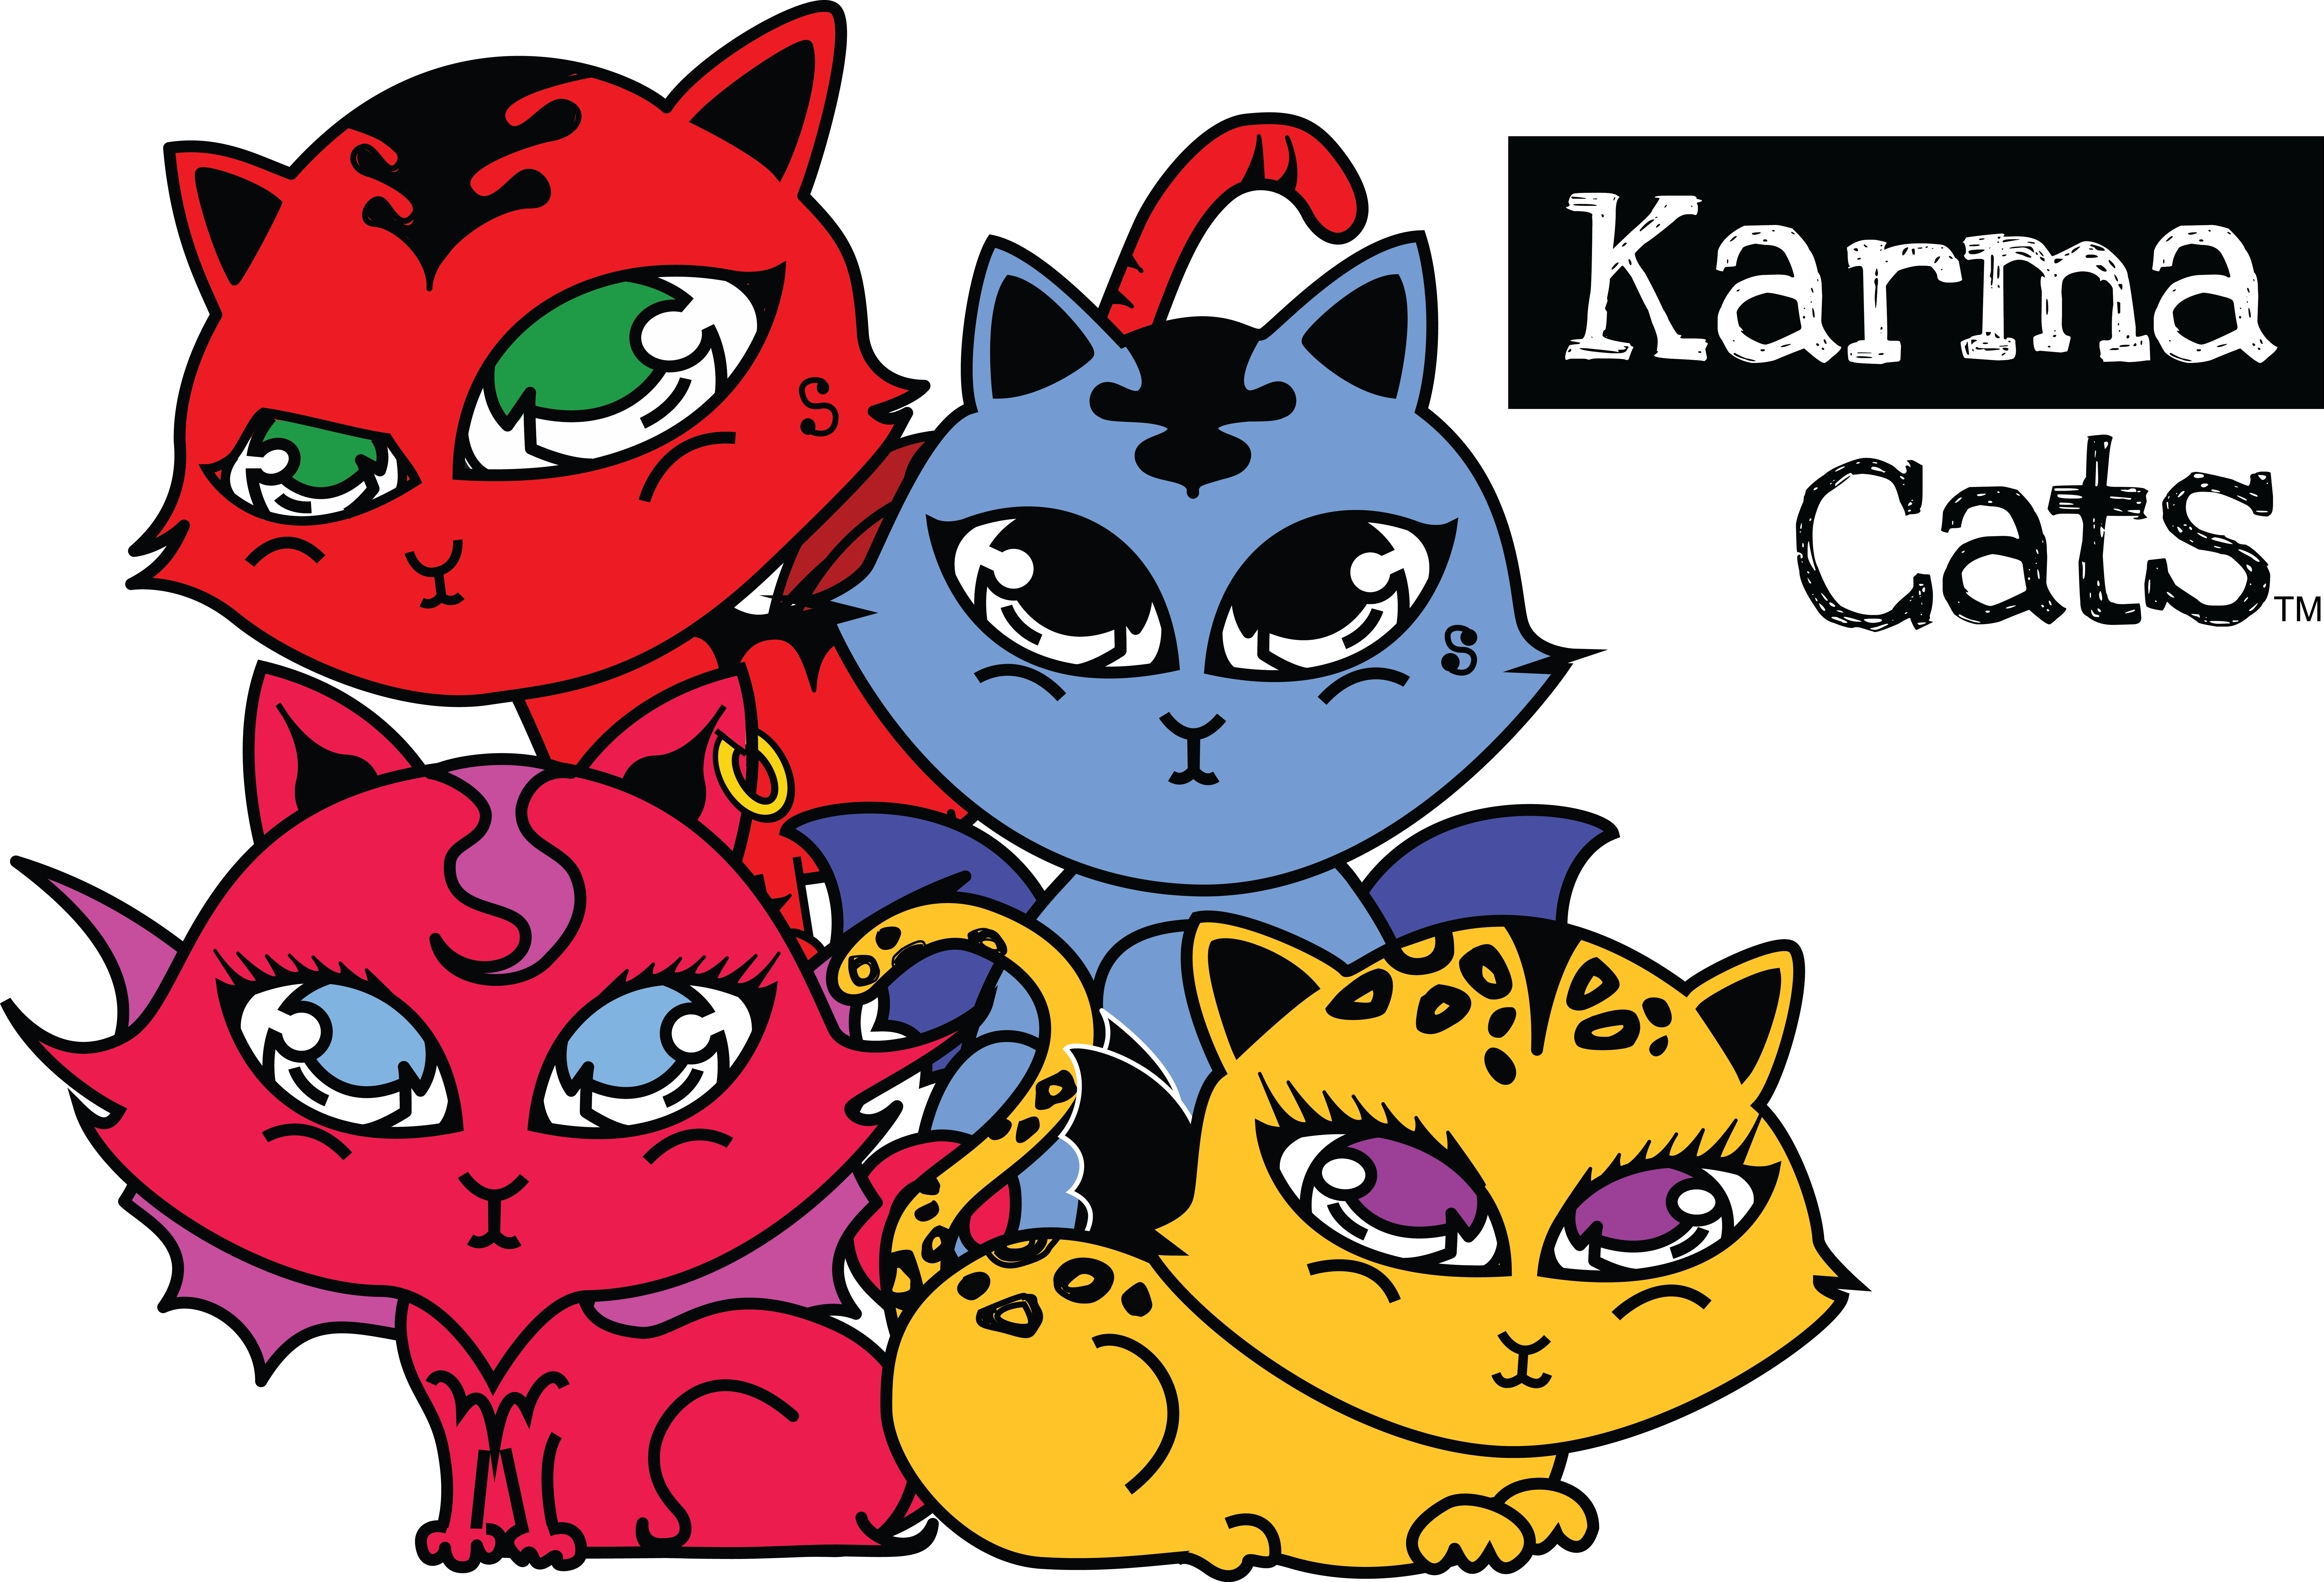 KARMA CATS